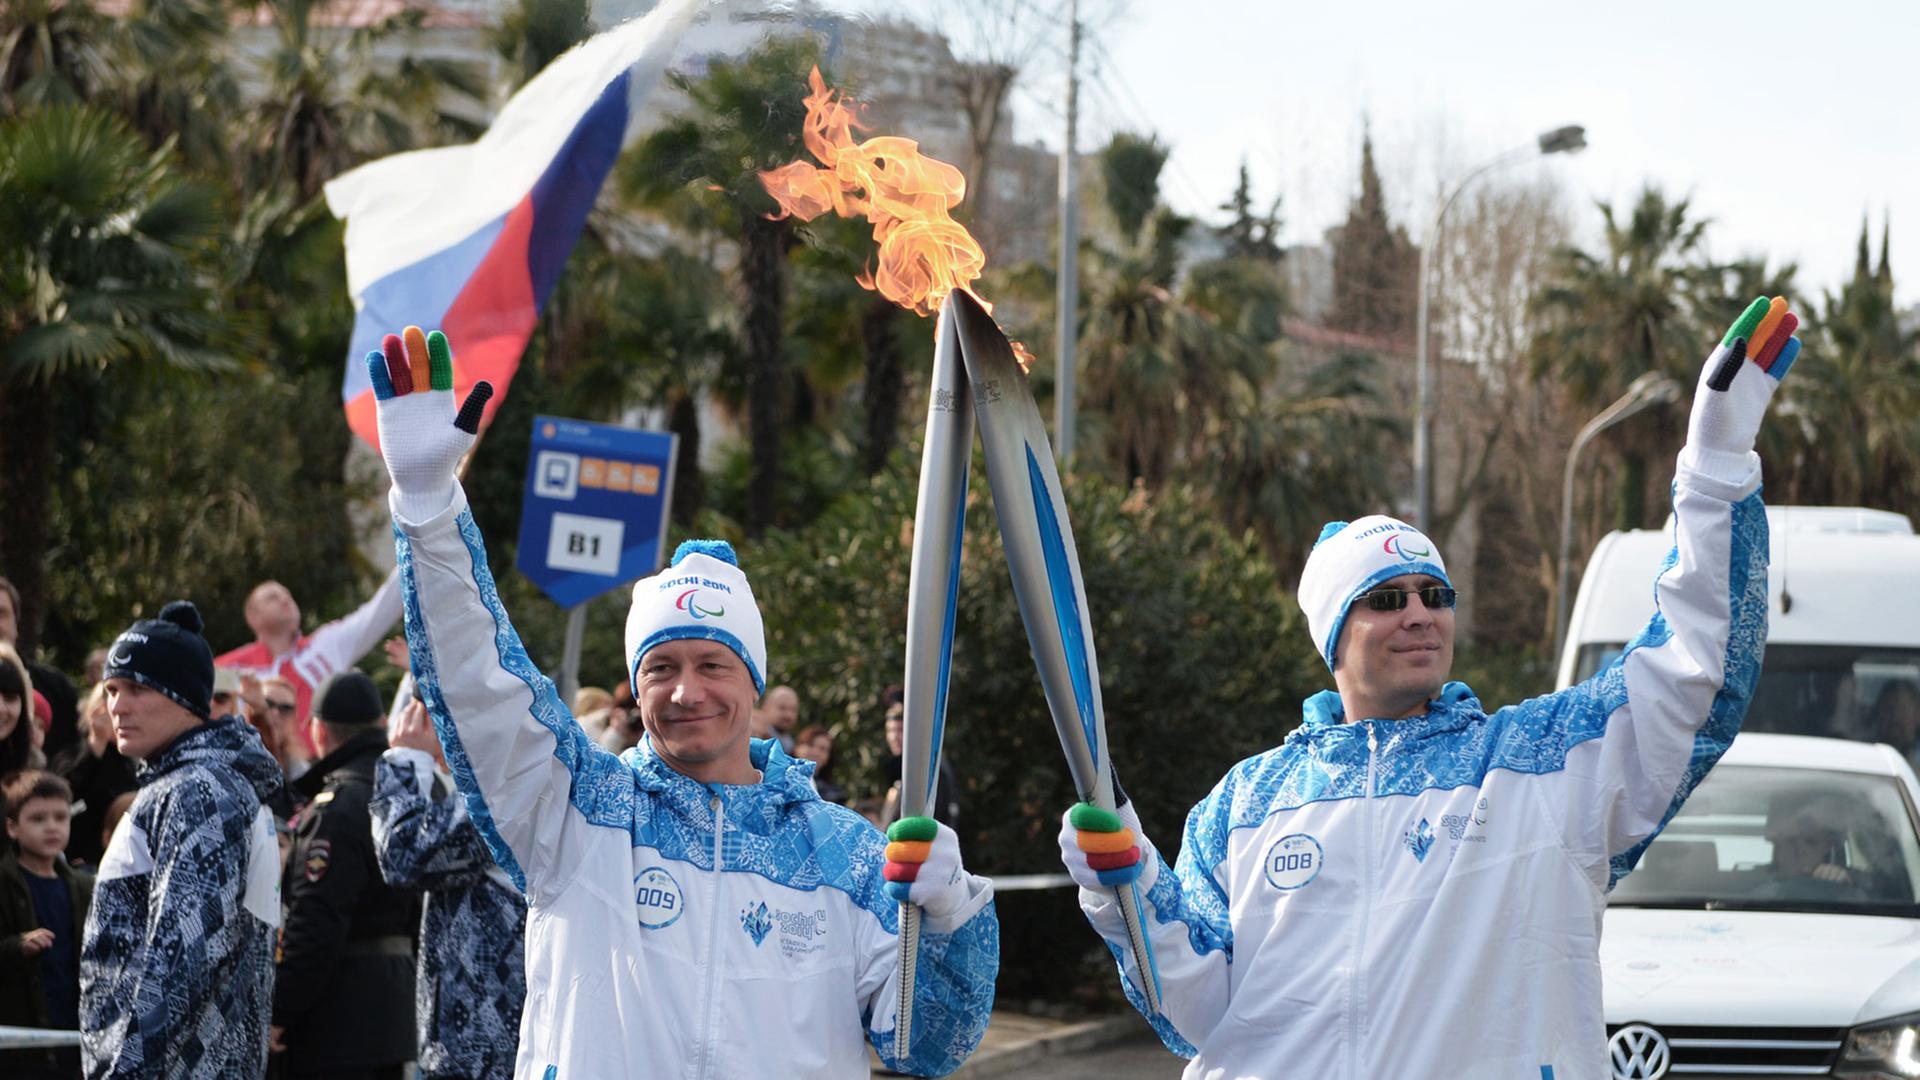 Fröhliche Paralympics in Sotschi, während Gastgeber Russland die Krim annektiert.